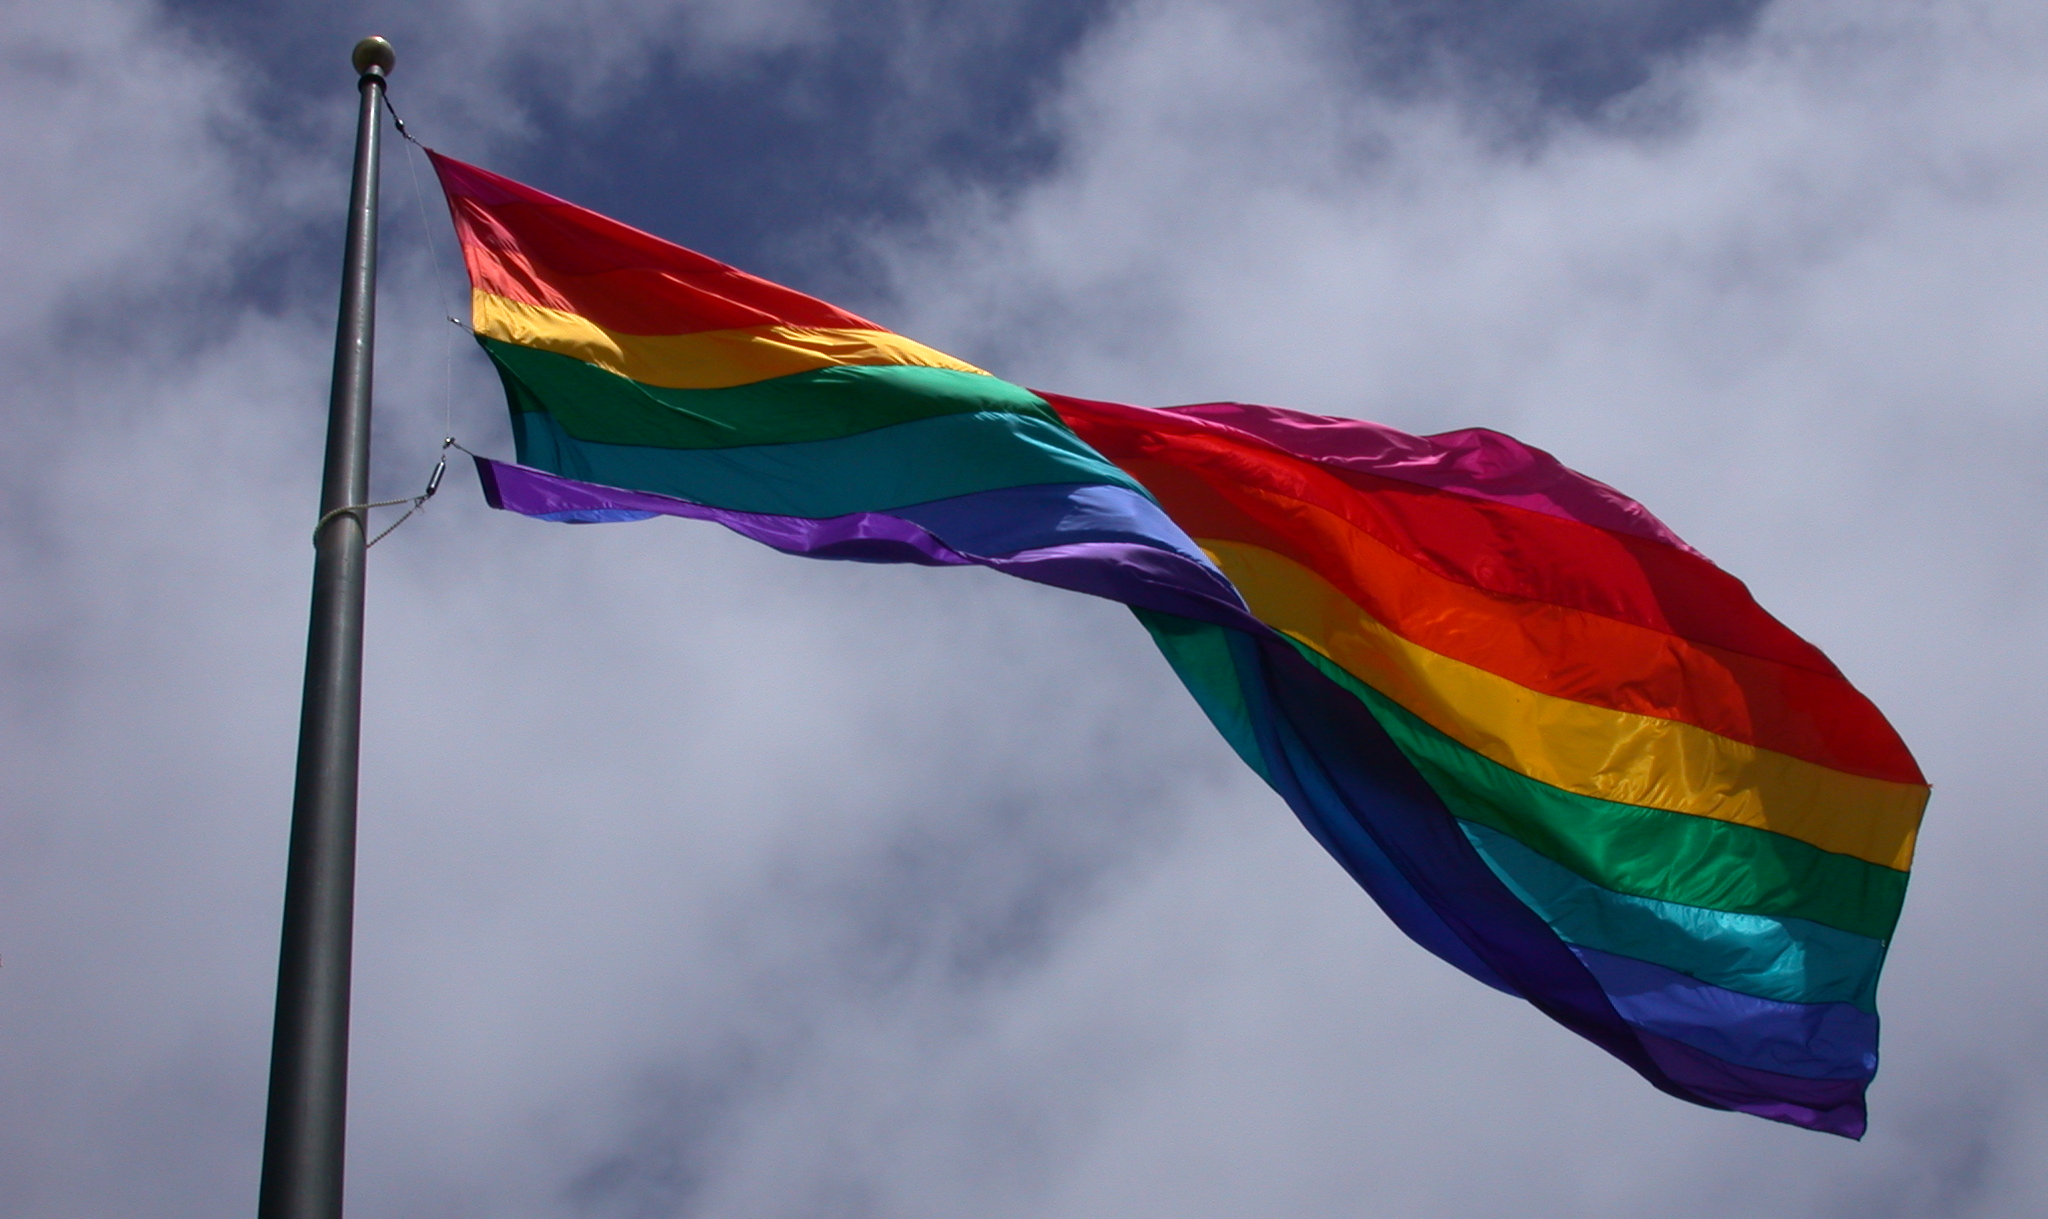 Após extensa batalha legal, Tribunal Constitucional desafia tradições conservadoras no país e reconhece direitos civis dos casais homossexuais